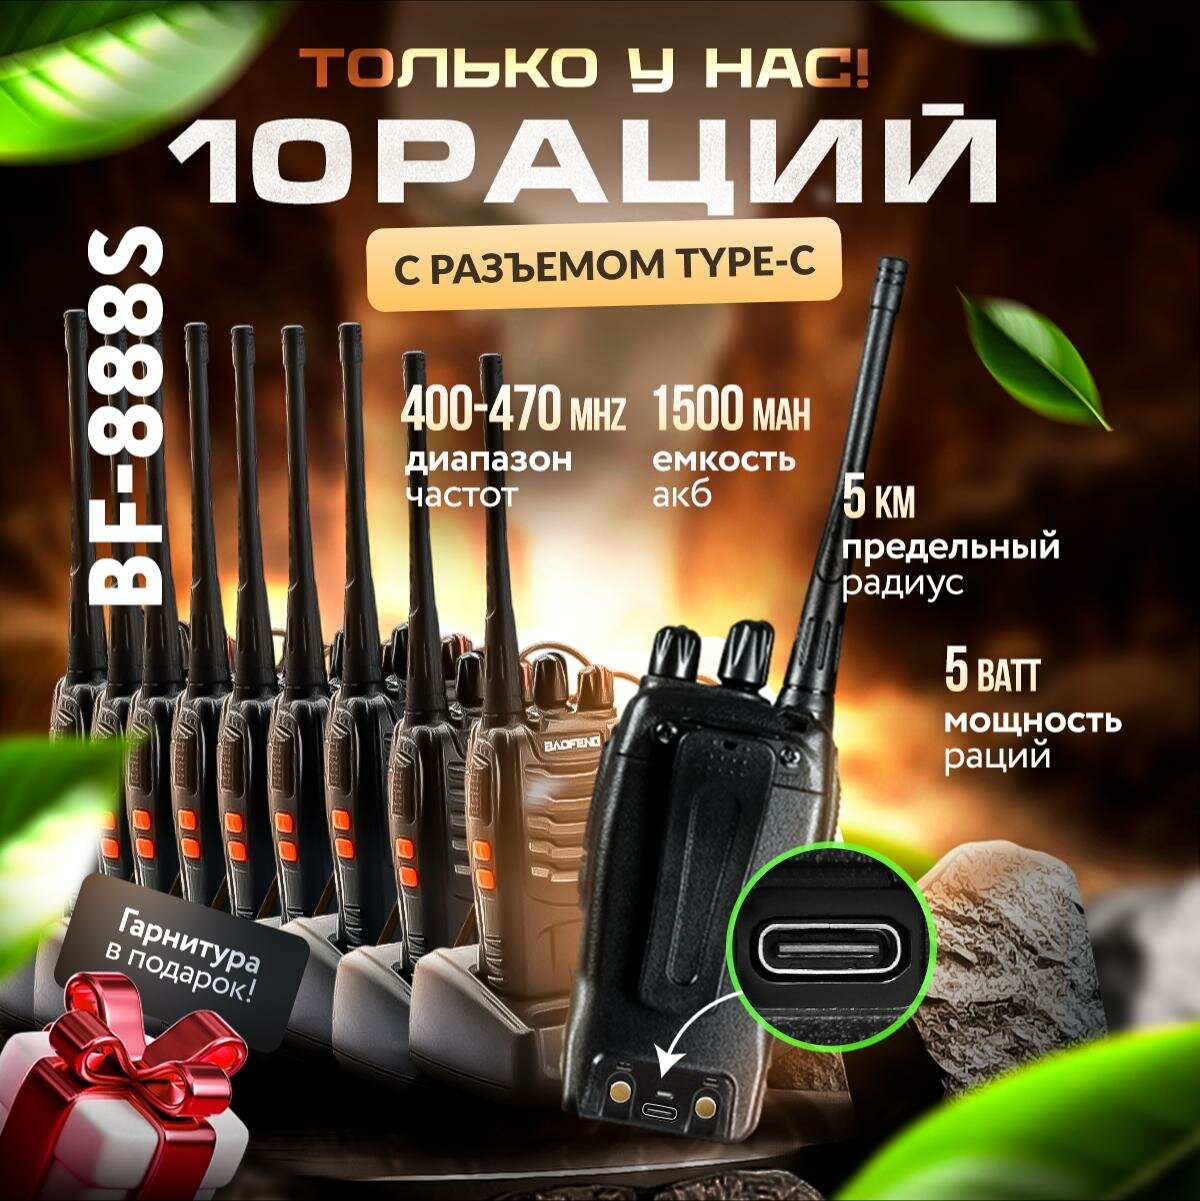 Комплект раций 10 шт baofeng 888s, USB зарядка, радиостанция для охоты, работы, авто